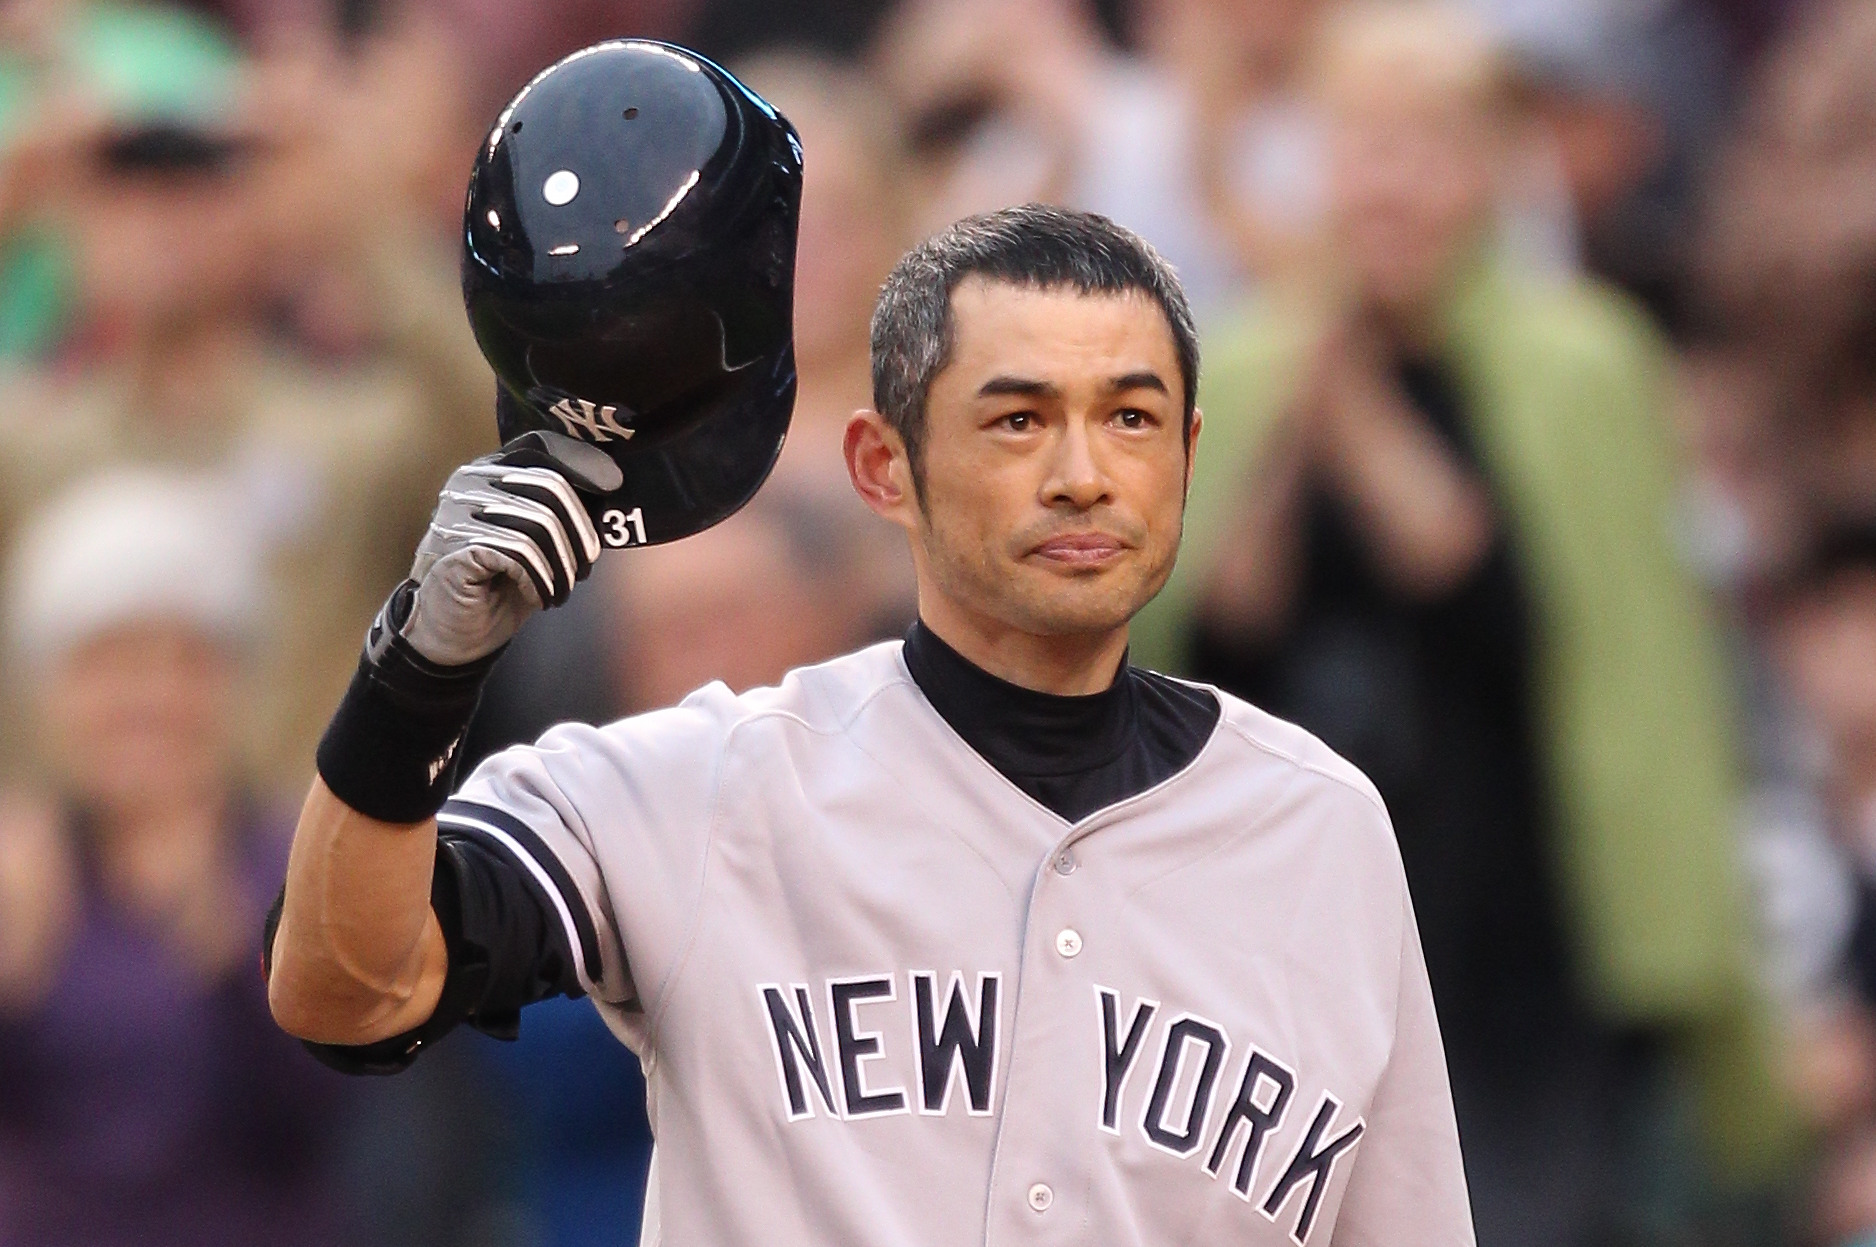 Yankees Close to Deal with Ichiro Suzuki